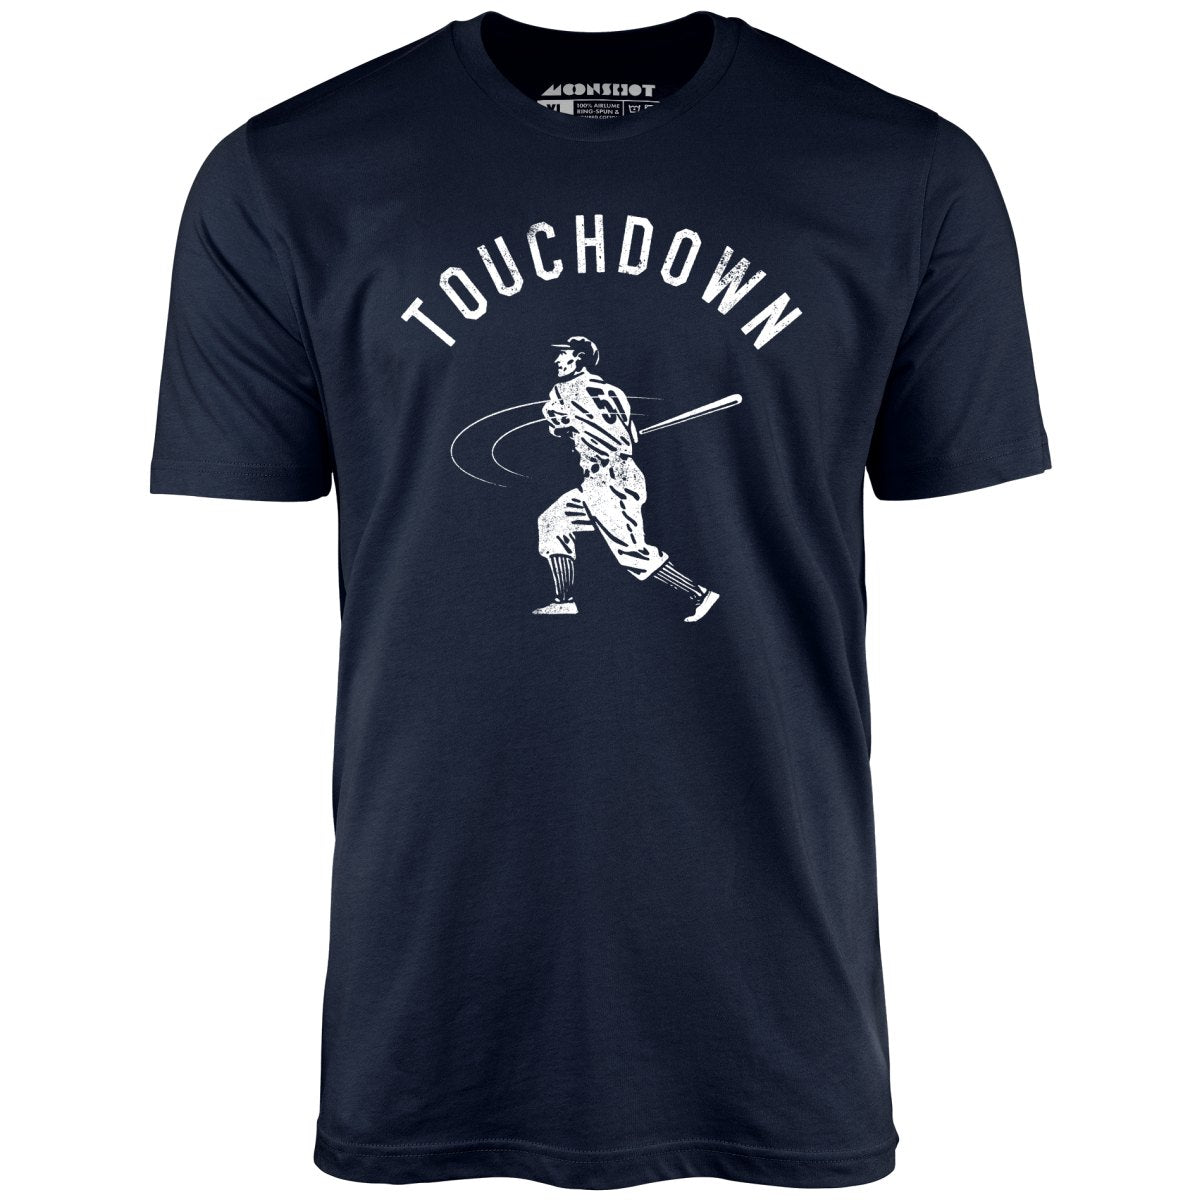 Touchdown - Unisex T-Shirt